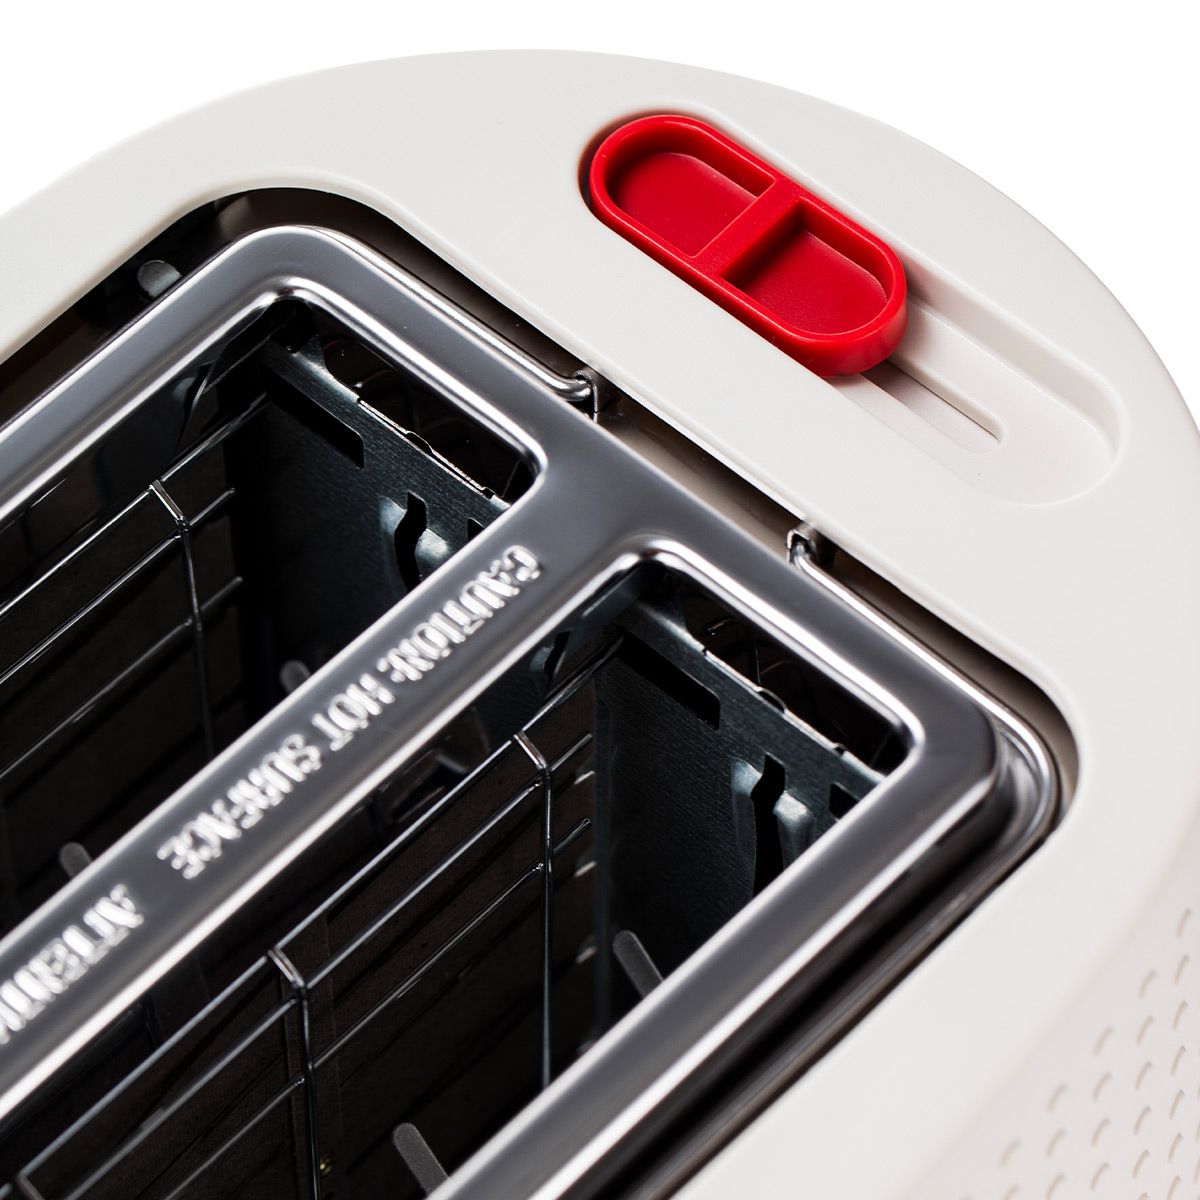 Bodum Bistro Elektrisk 2-Skivers Toaster, Hvid